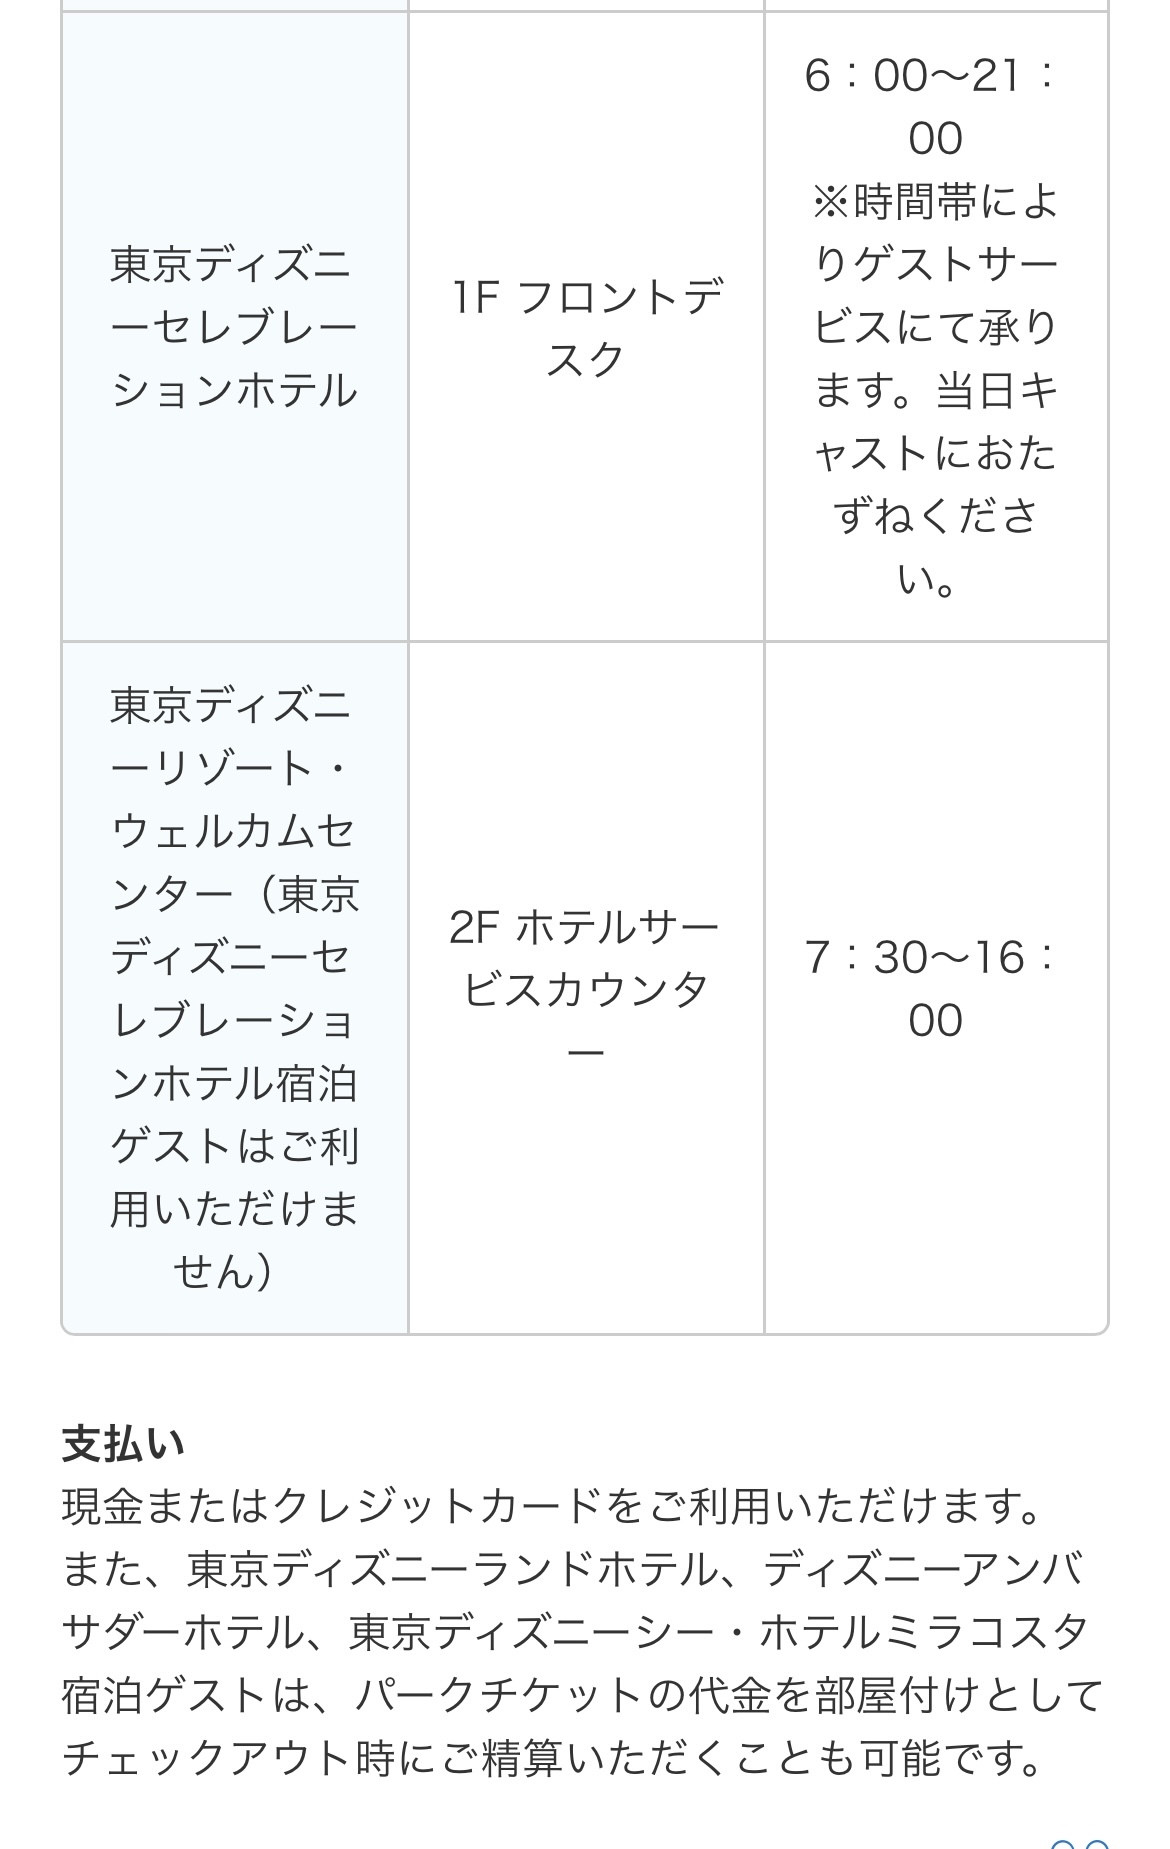 ディズニーホテル宿泊者 チケット関連確認を 東京ディズニーリポート